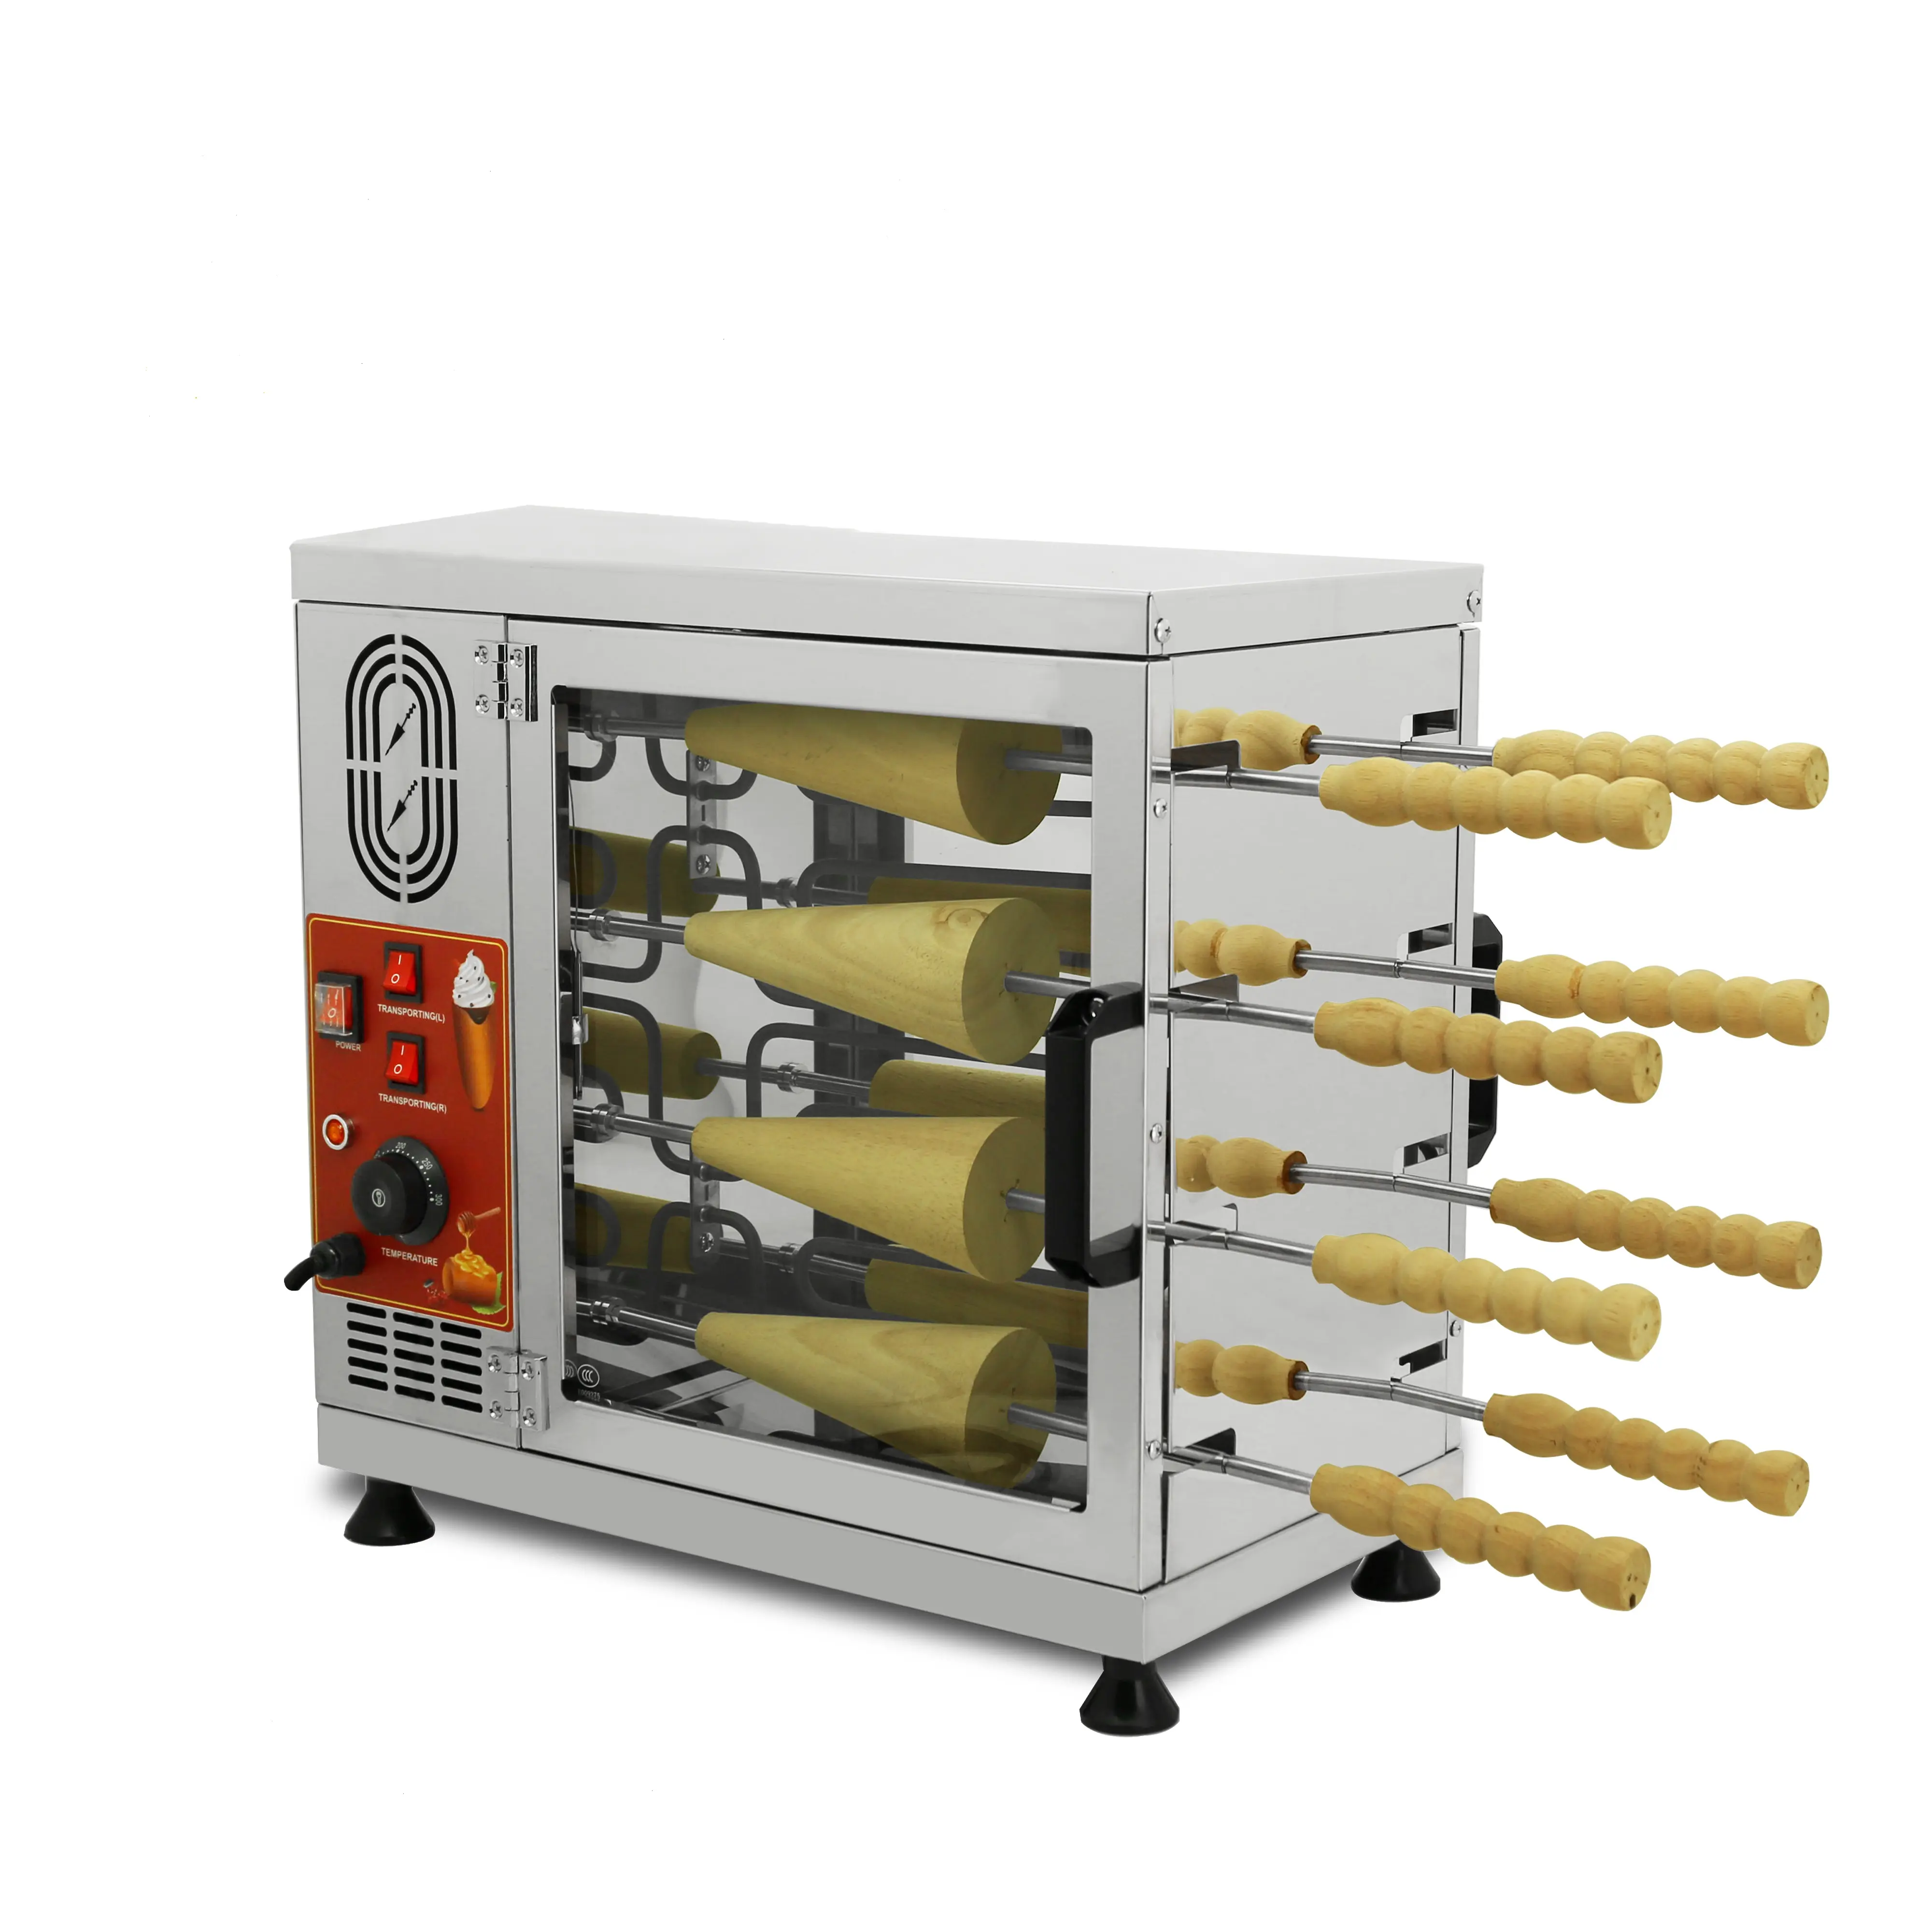 Mesin Pembuat Roti Kualitas Tinggi/Oven Kue Cerobong Asap/Mesin Model Oven Kue Premium